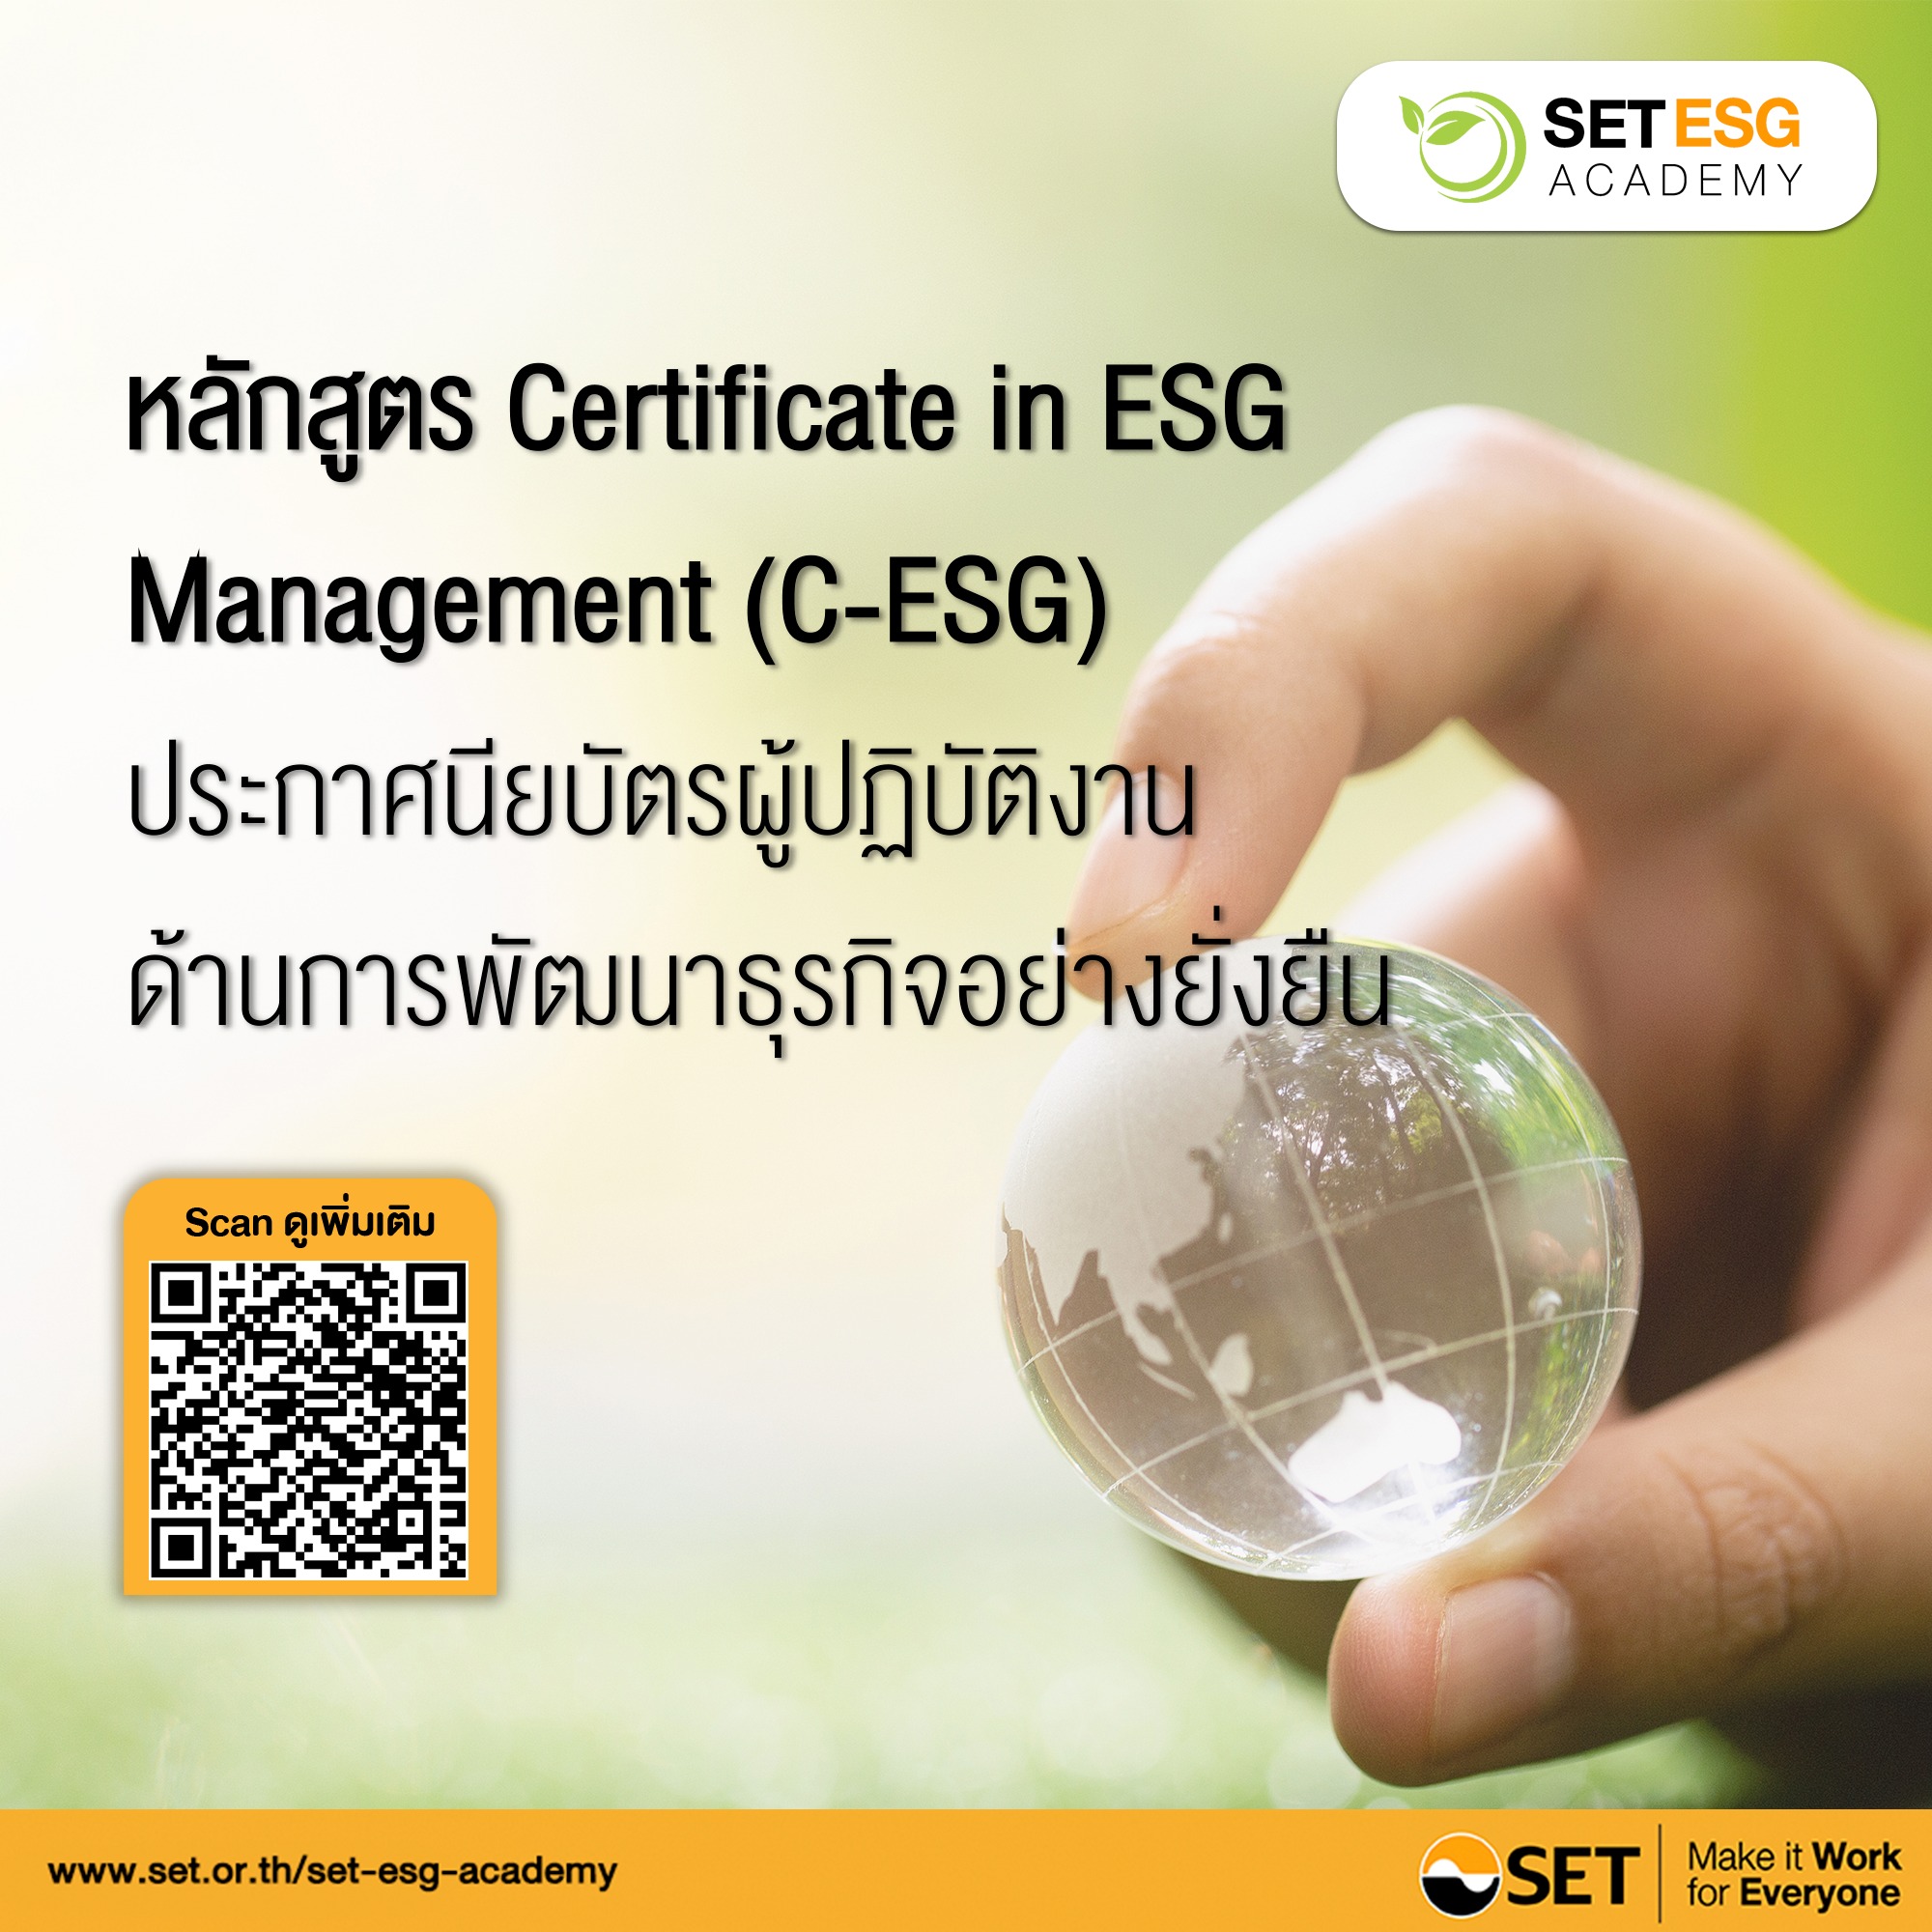 หลักสูตร CERTIFICATE IN ESG MANAGEMENT (C-ESG)